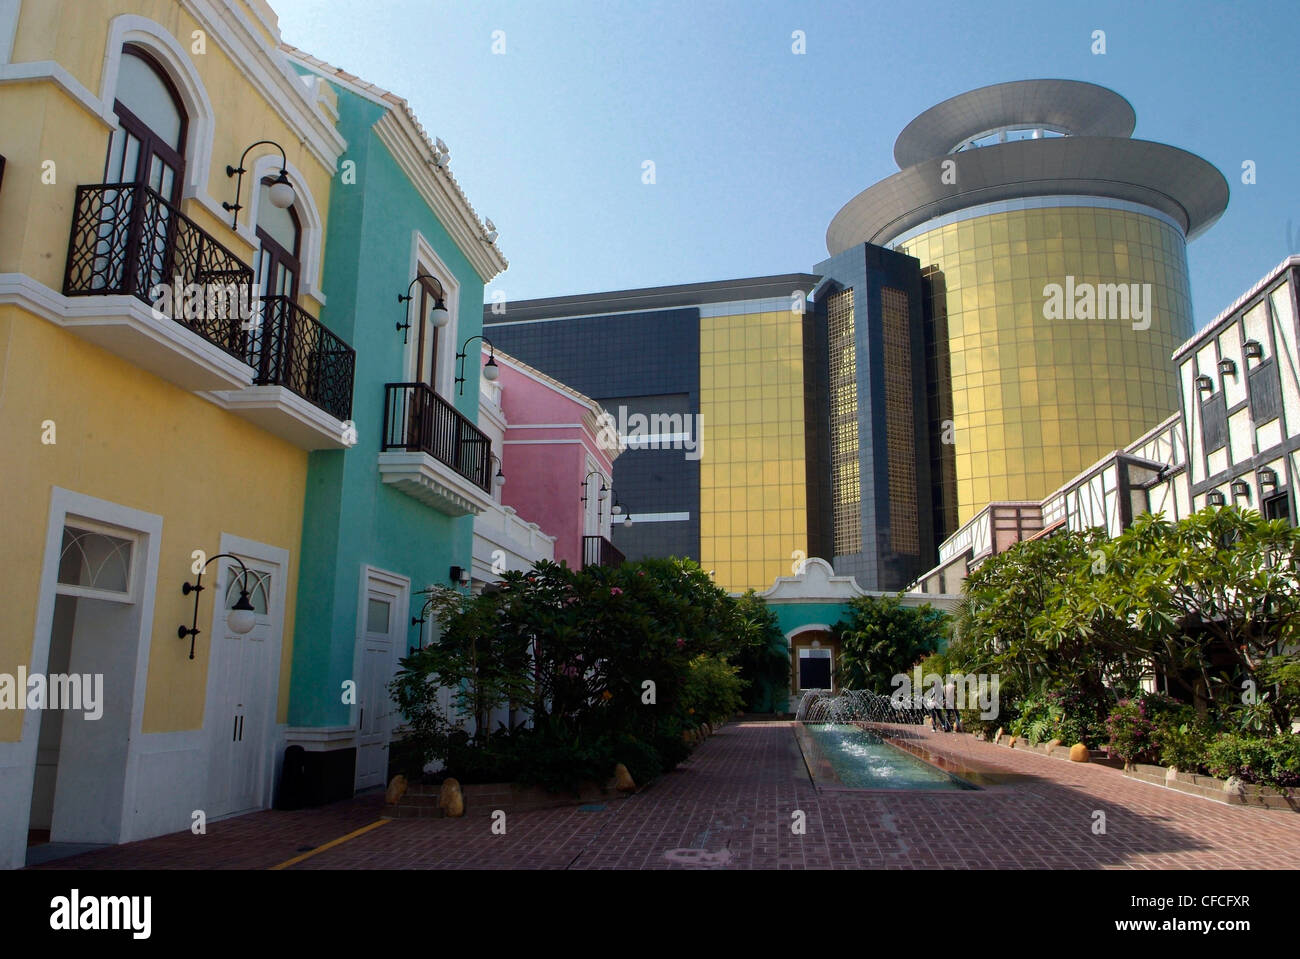 Chine - Macao Sands Hotel/Casino et Fisherman's Wharf bâtiments de style colonial portugais colorés la trame Sands Hotel. Banque D'Images